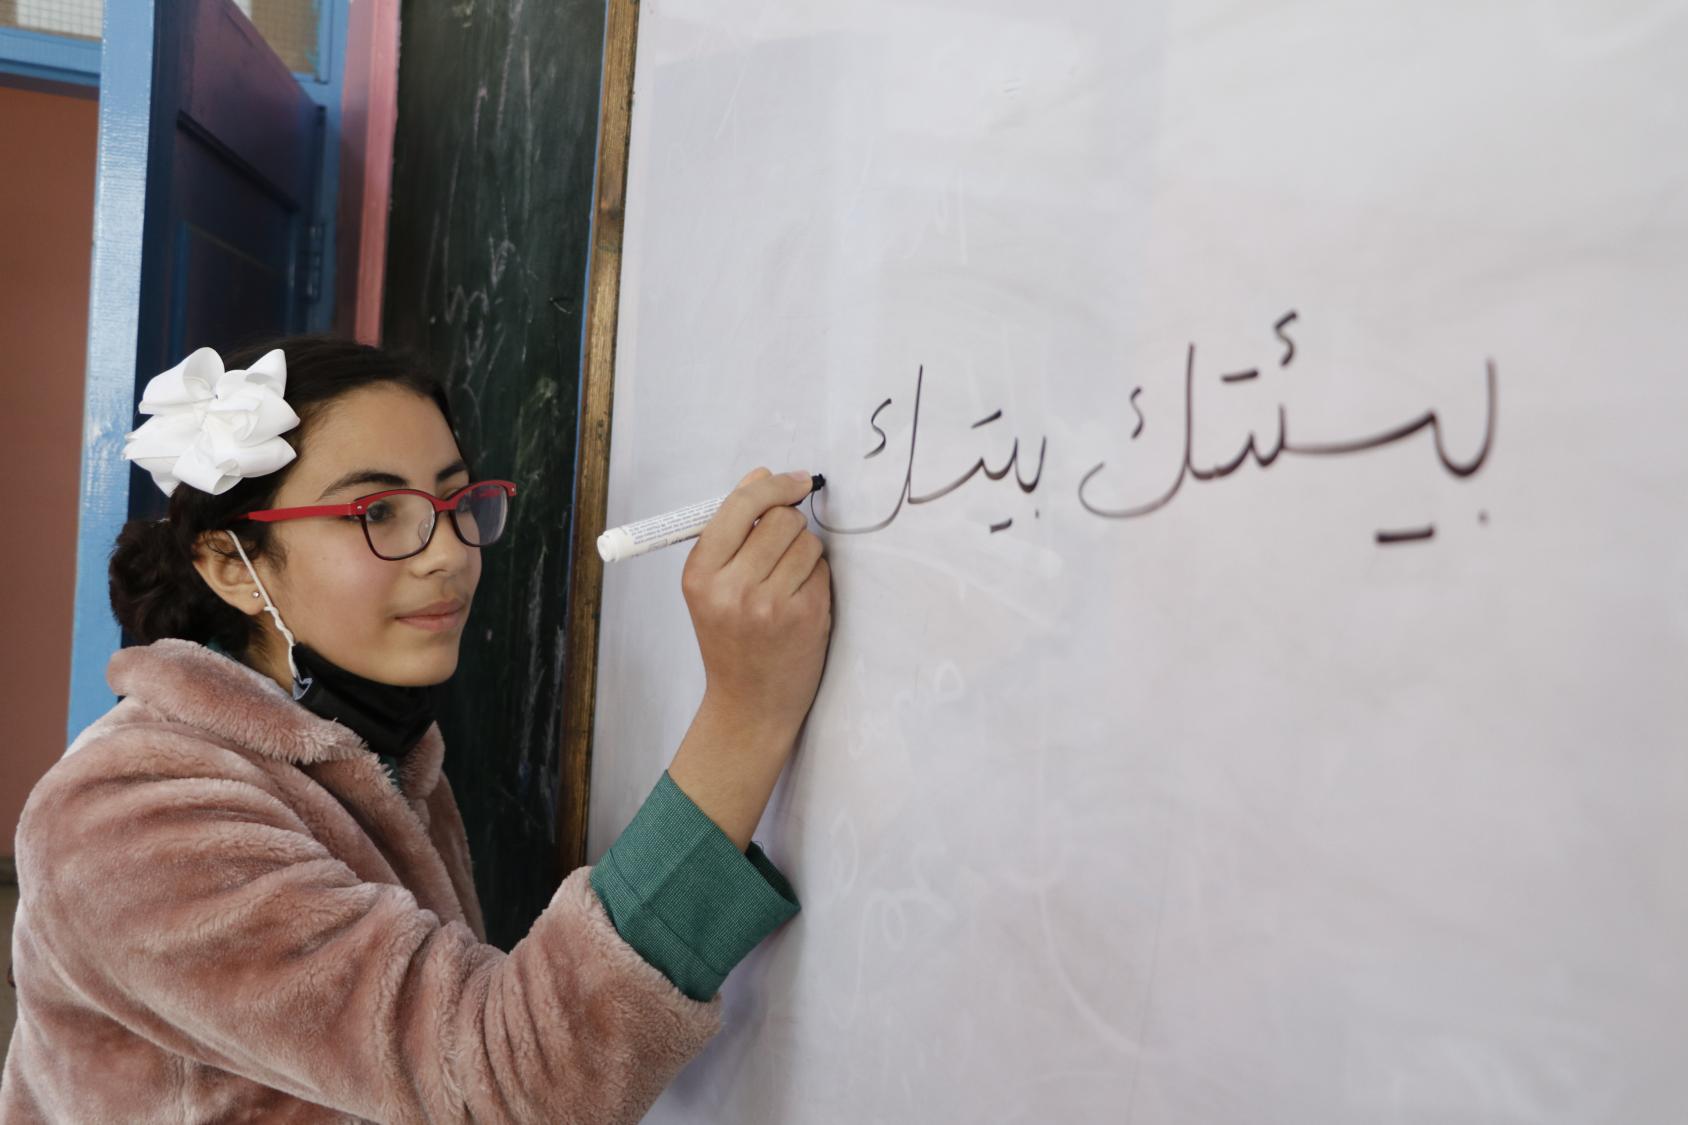 Una mujer joven escribiendo en una pizarra: "tu entorno es tu casa".